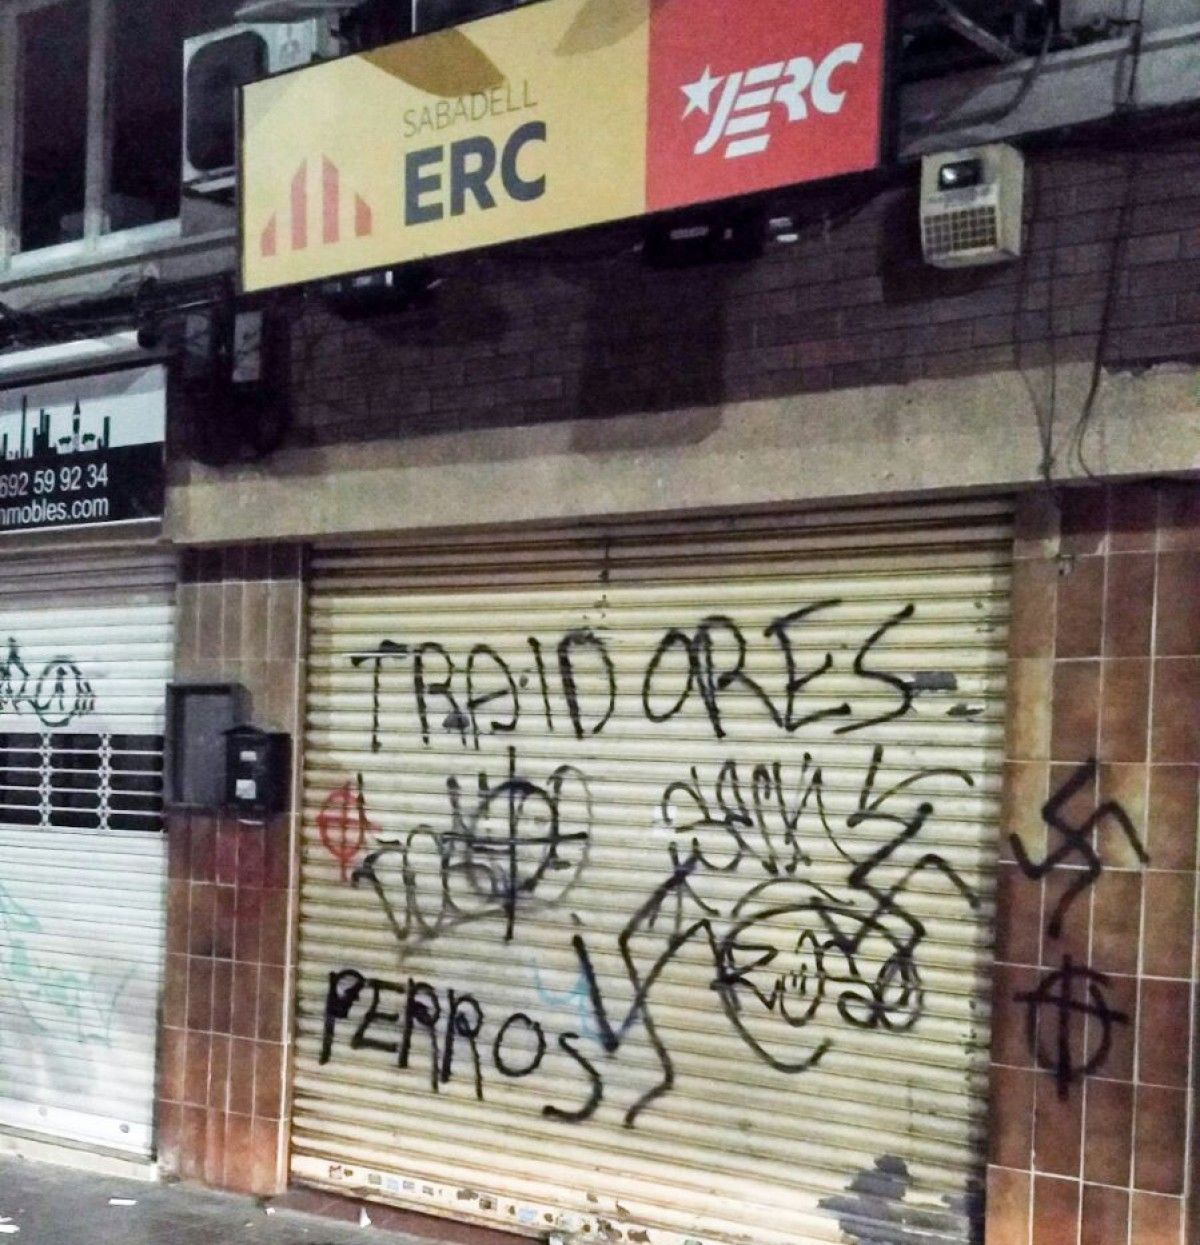 La seu d'ERC de Sabadell atacada amb pintades feixistes